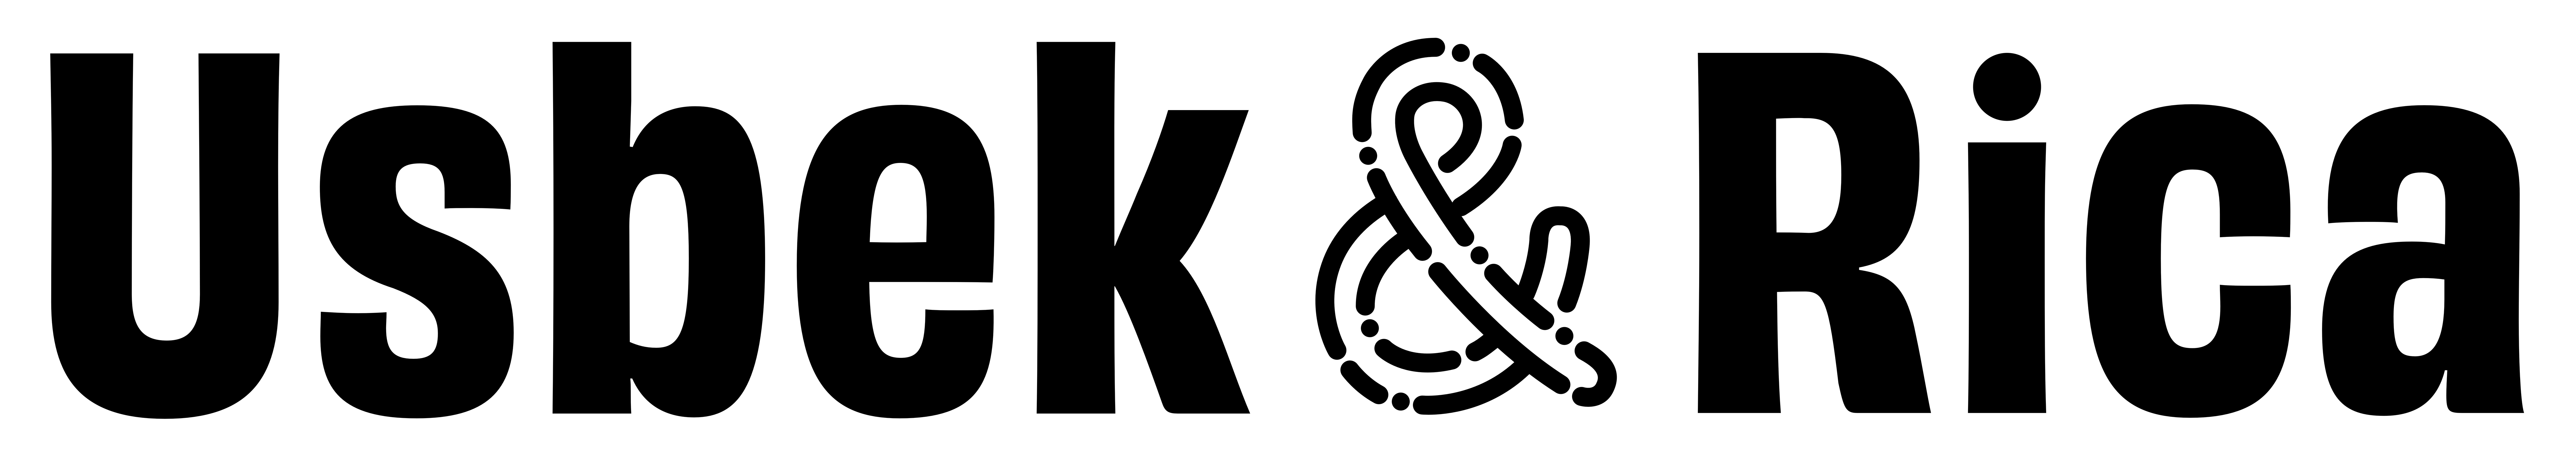 Logo de la revue Usbek & Rica contenant un lien redirigeant sur leur site internet.